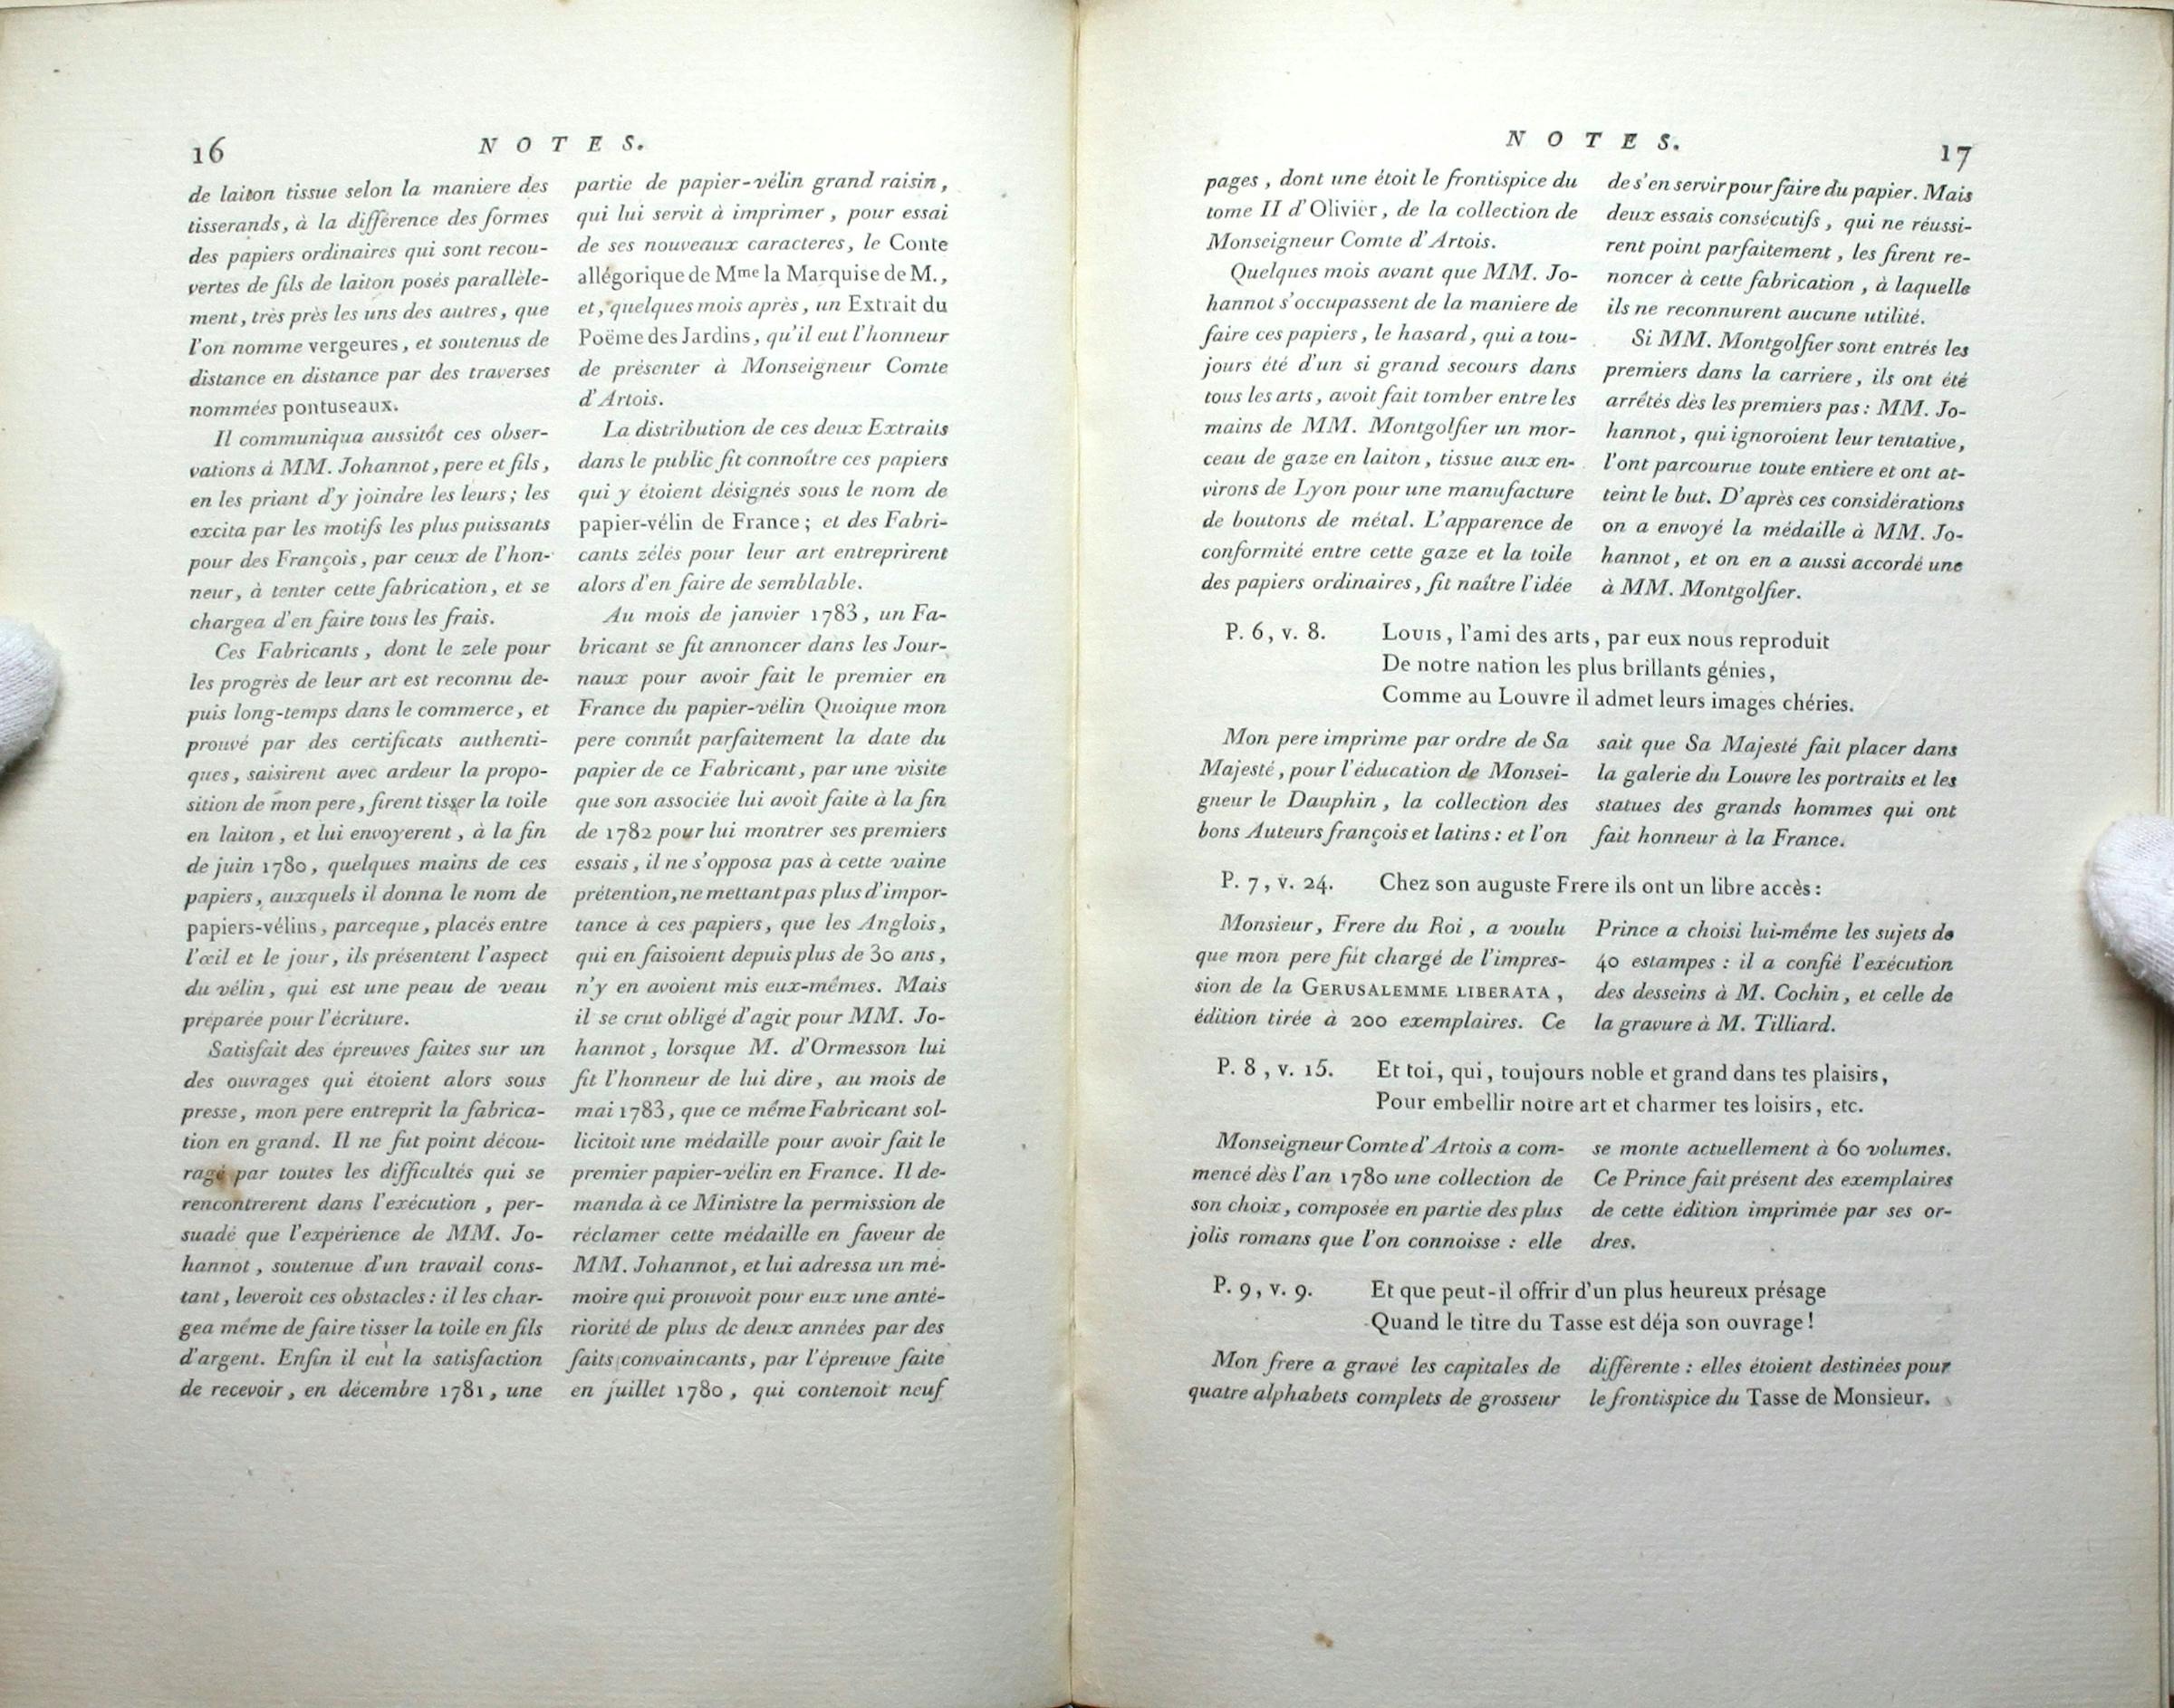 Pierre Didot, Épître sur les progrès de l'imprimerie, 1784